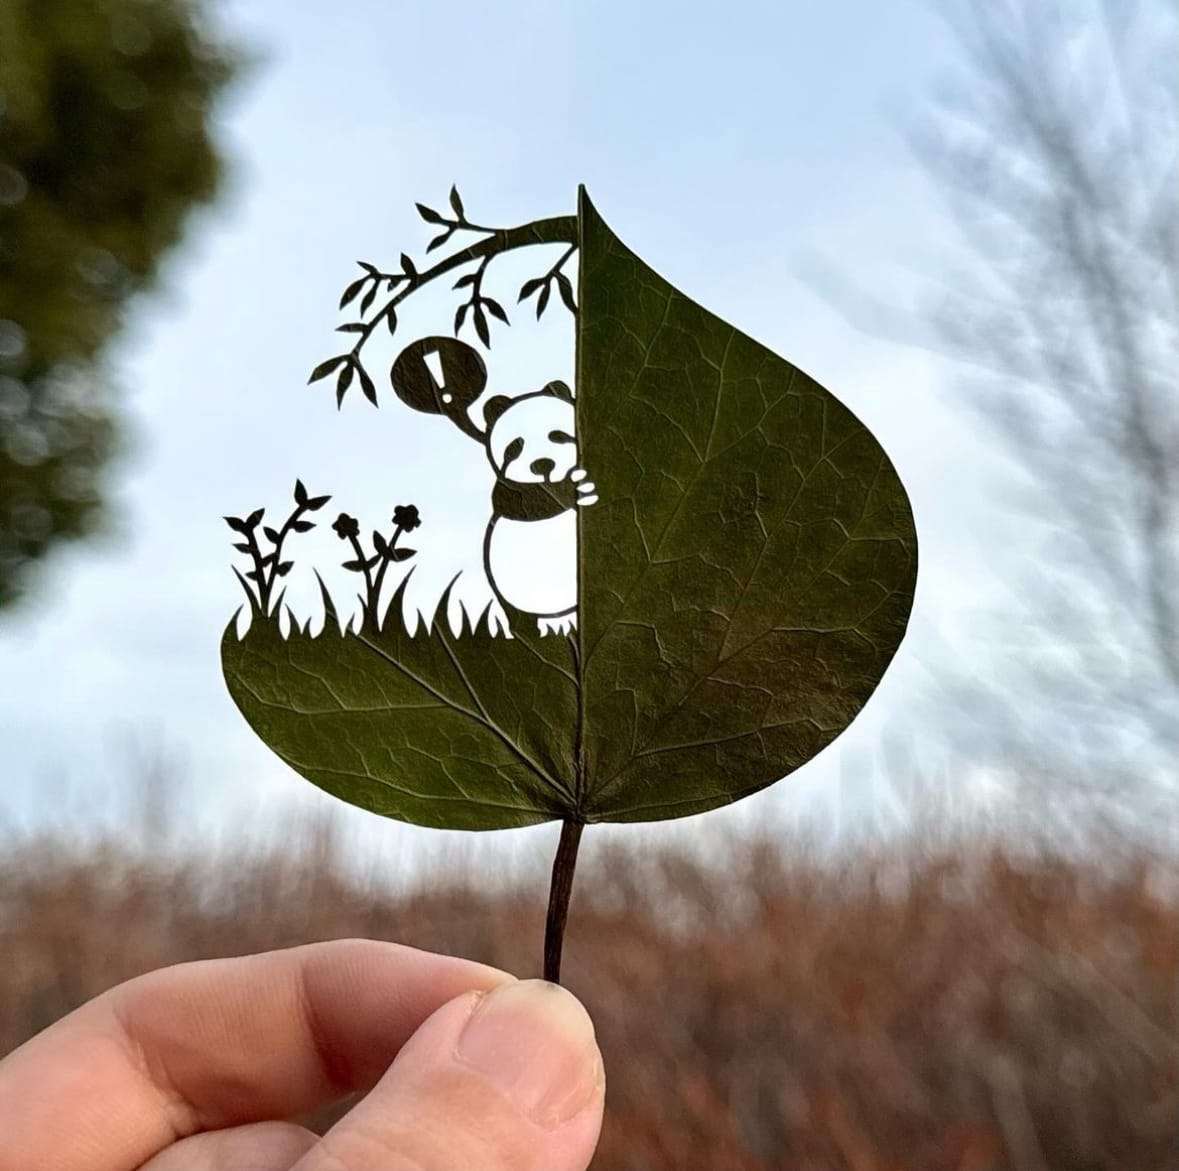 ผลงานศิลปะการตัดแต่งใบไม้สุดเจ๋ง Lito Leaf Art